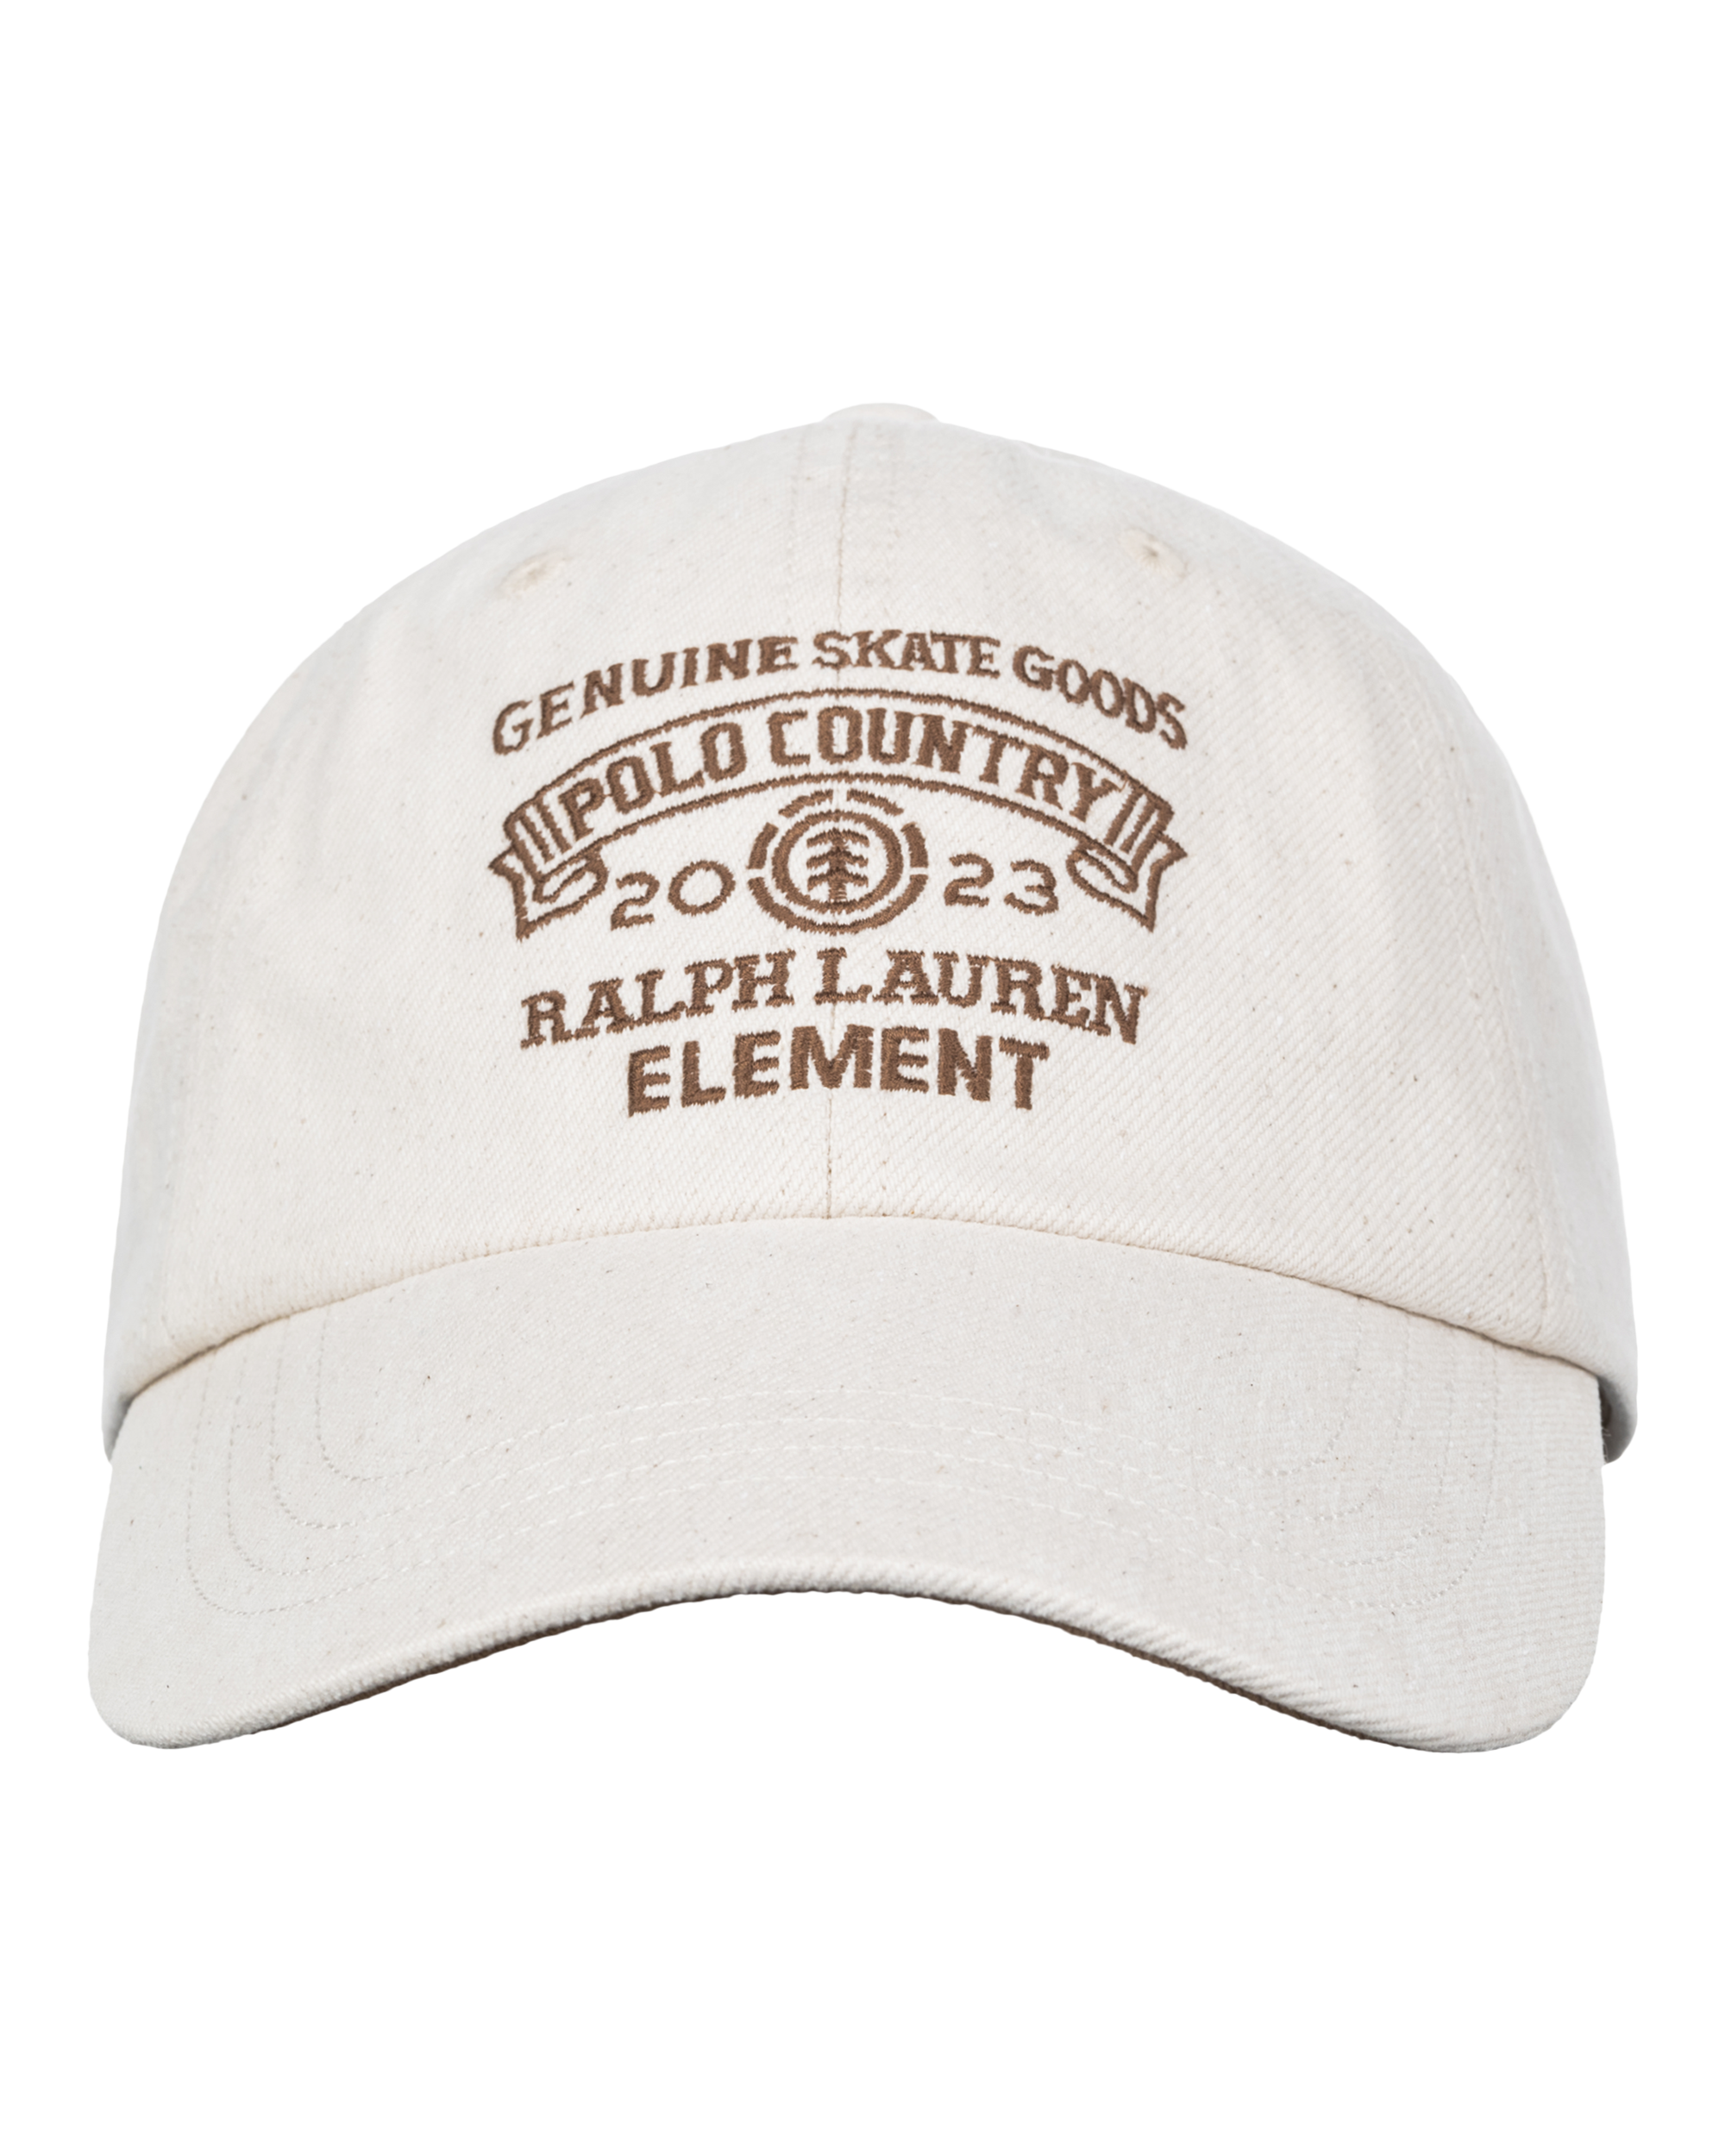 PRL X ELEMENT CLASSIC SPORT CAP ECRU